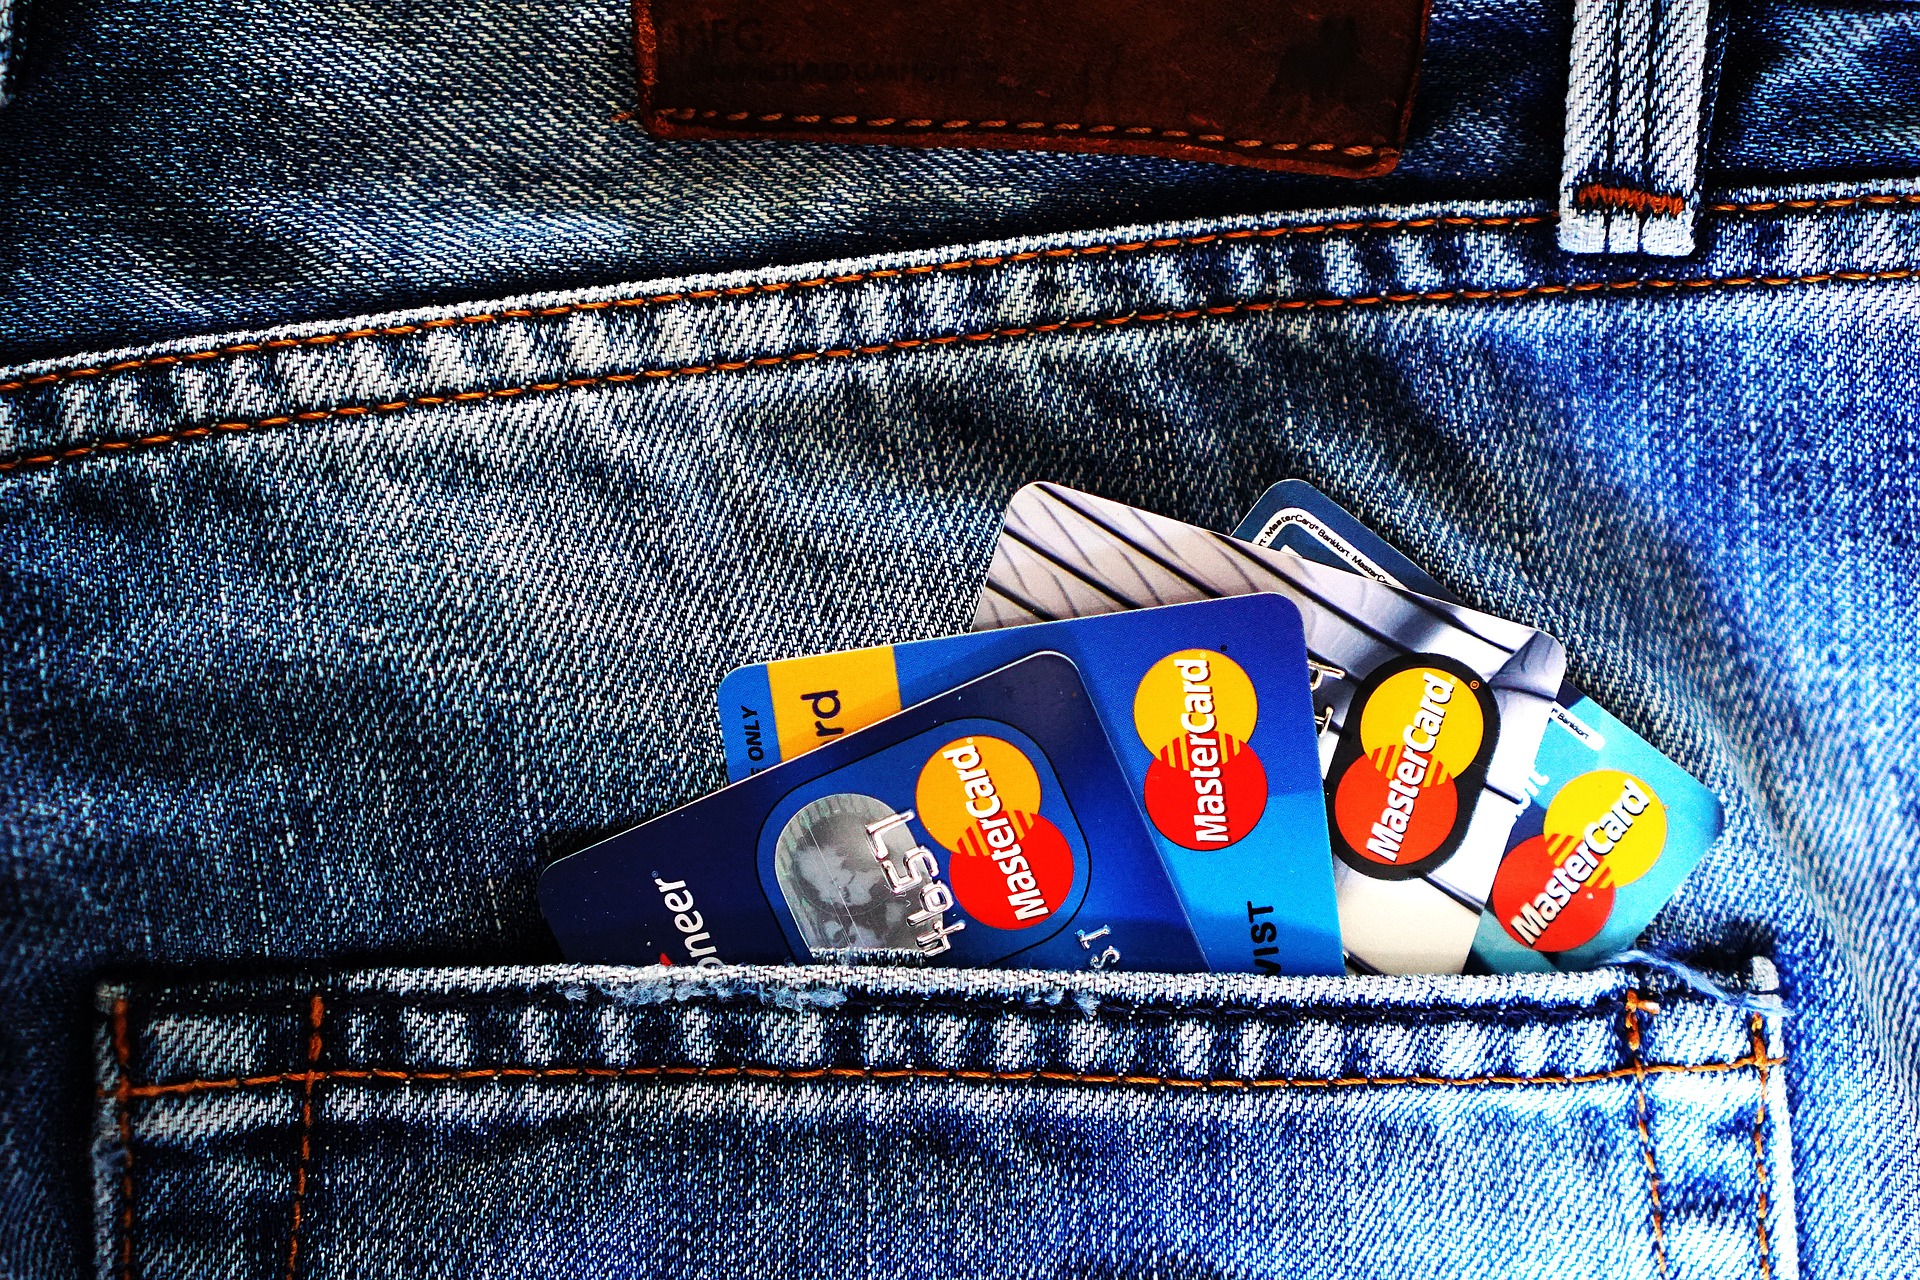 differenza tra bancomat e carta di credito